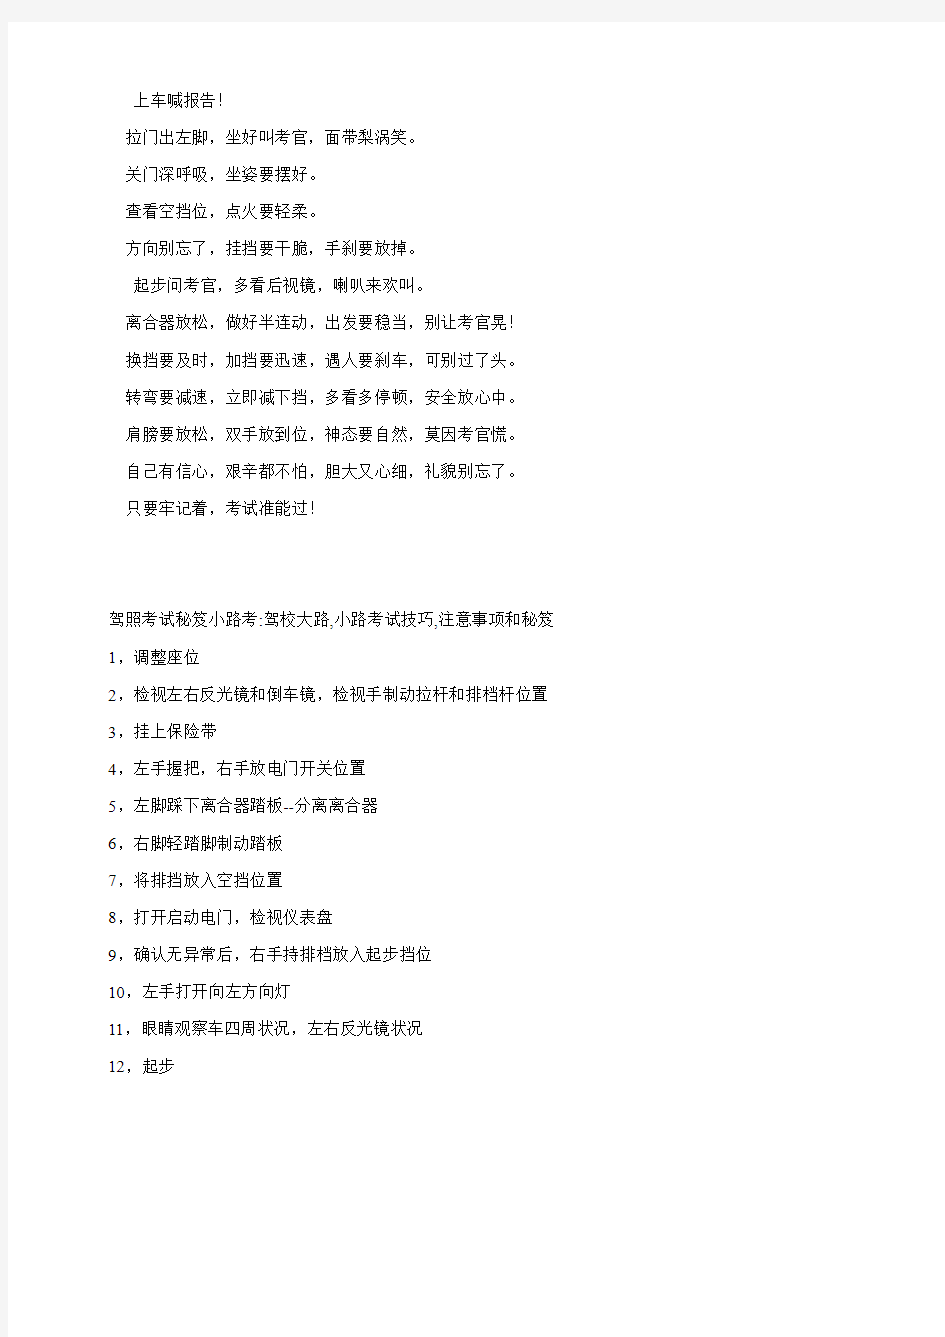 上海驾照考试总结——zzb